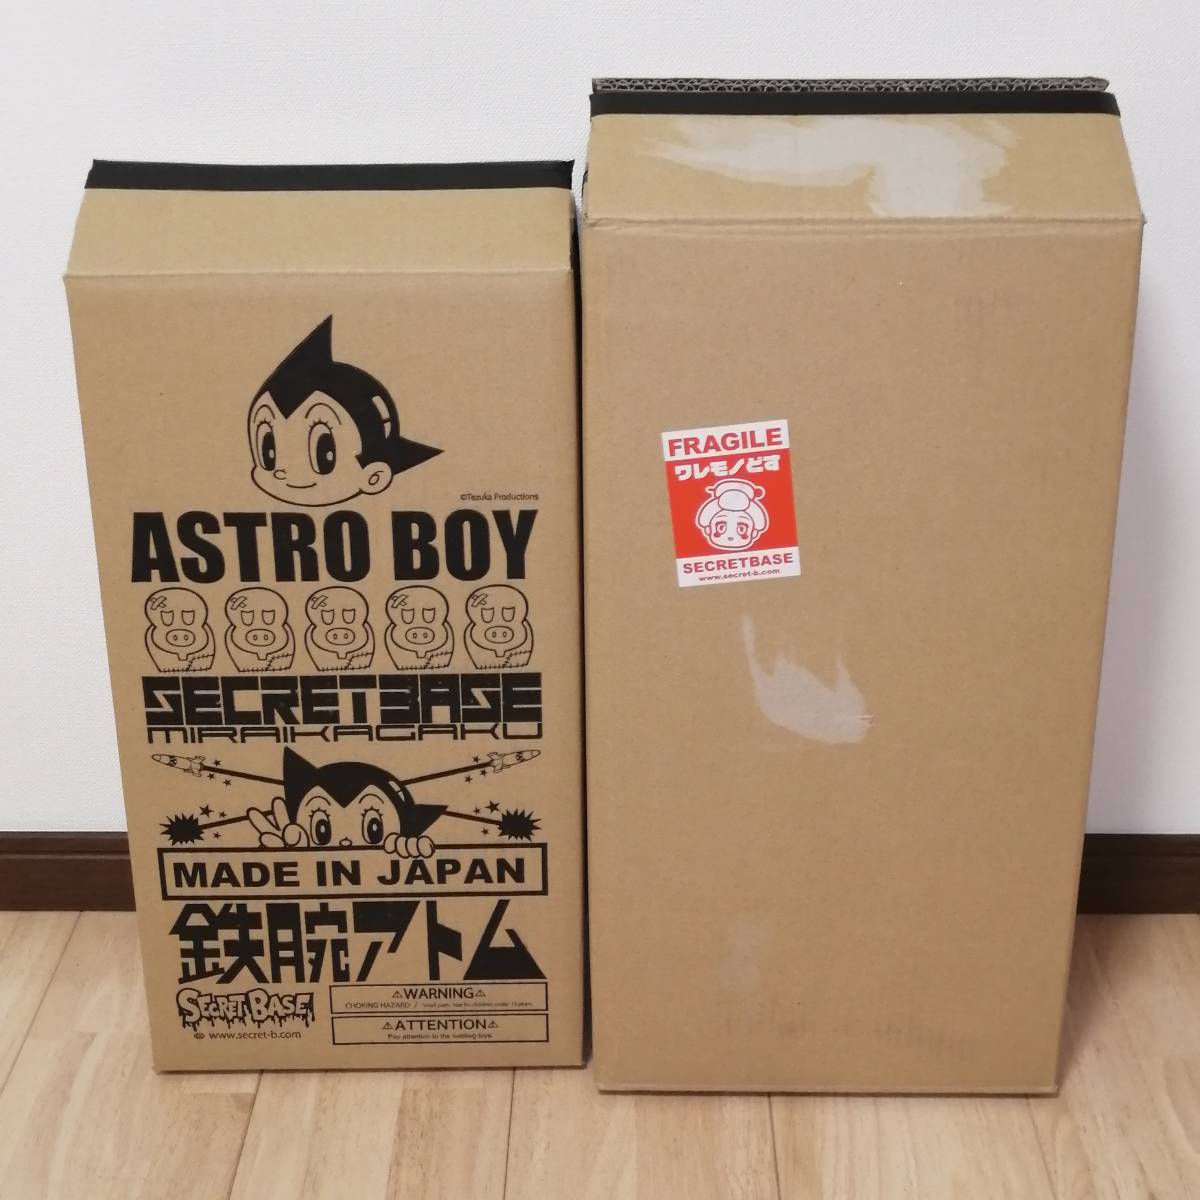  Secret основа sofvi secret base Atom Big Scale Astro Boy Full color inside Mecha осмотр bruma. медведь ru солнечный Bear модель 